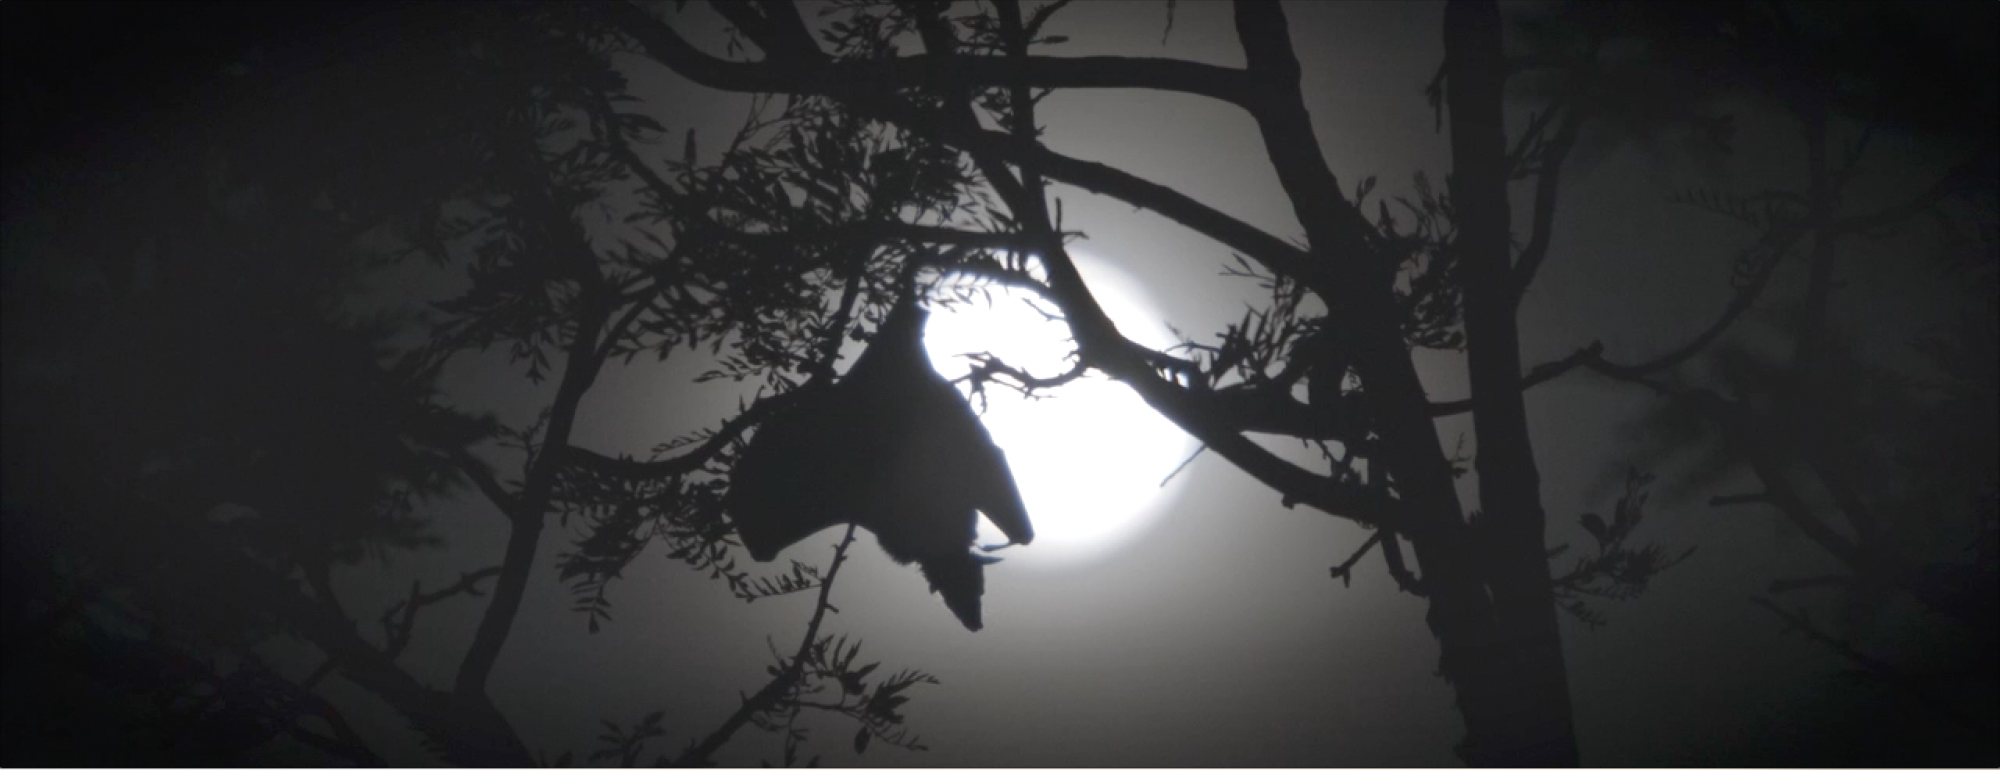 a bat flies by moonlight